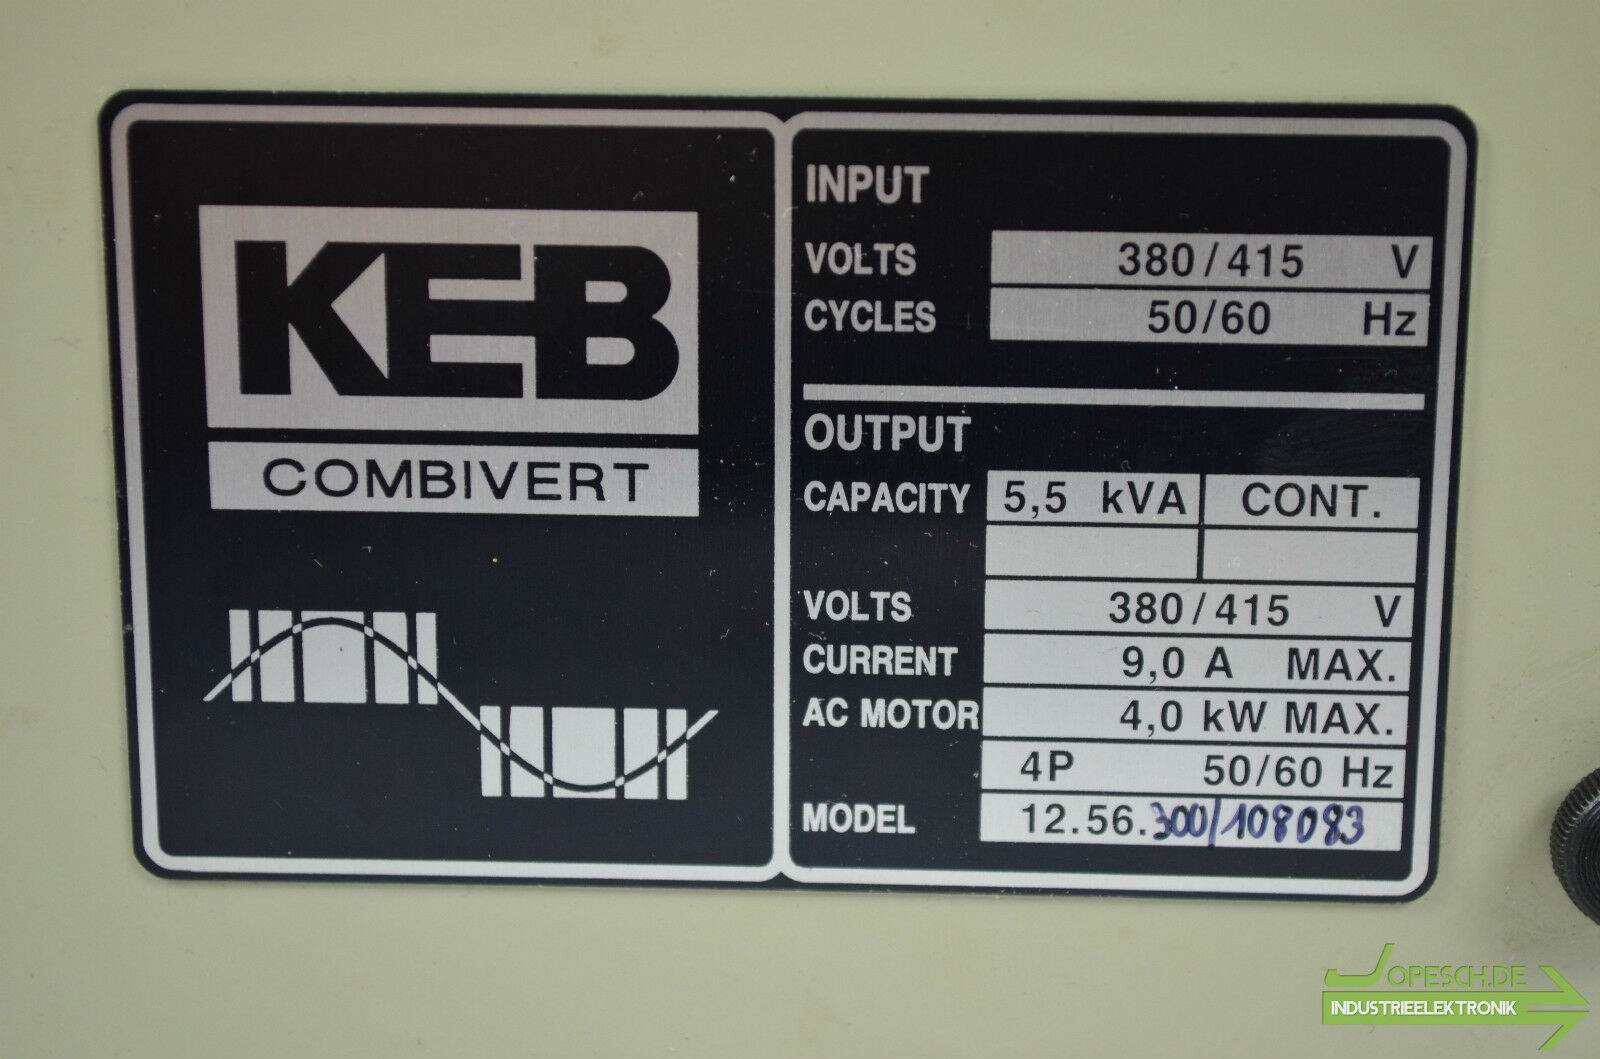 KEB Combivert 4kW 12.56.300